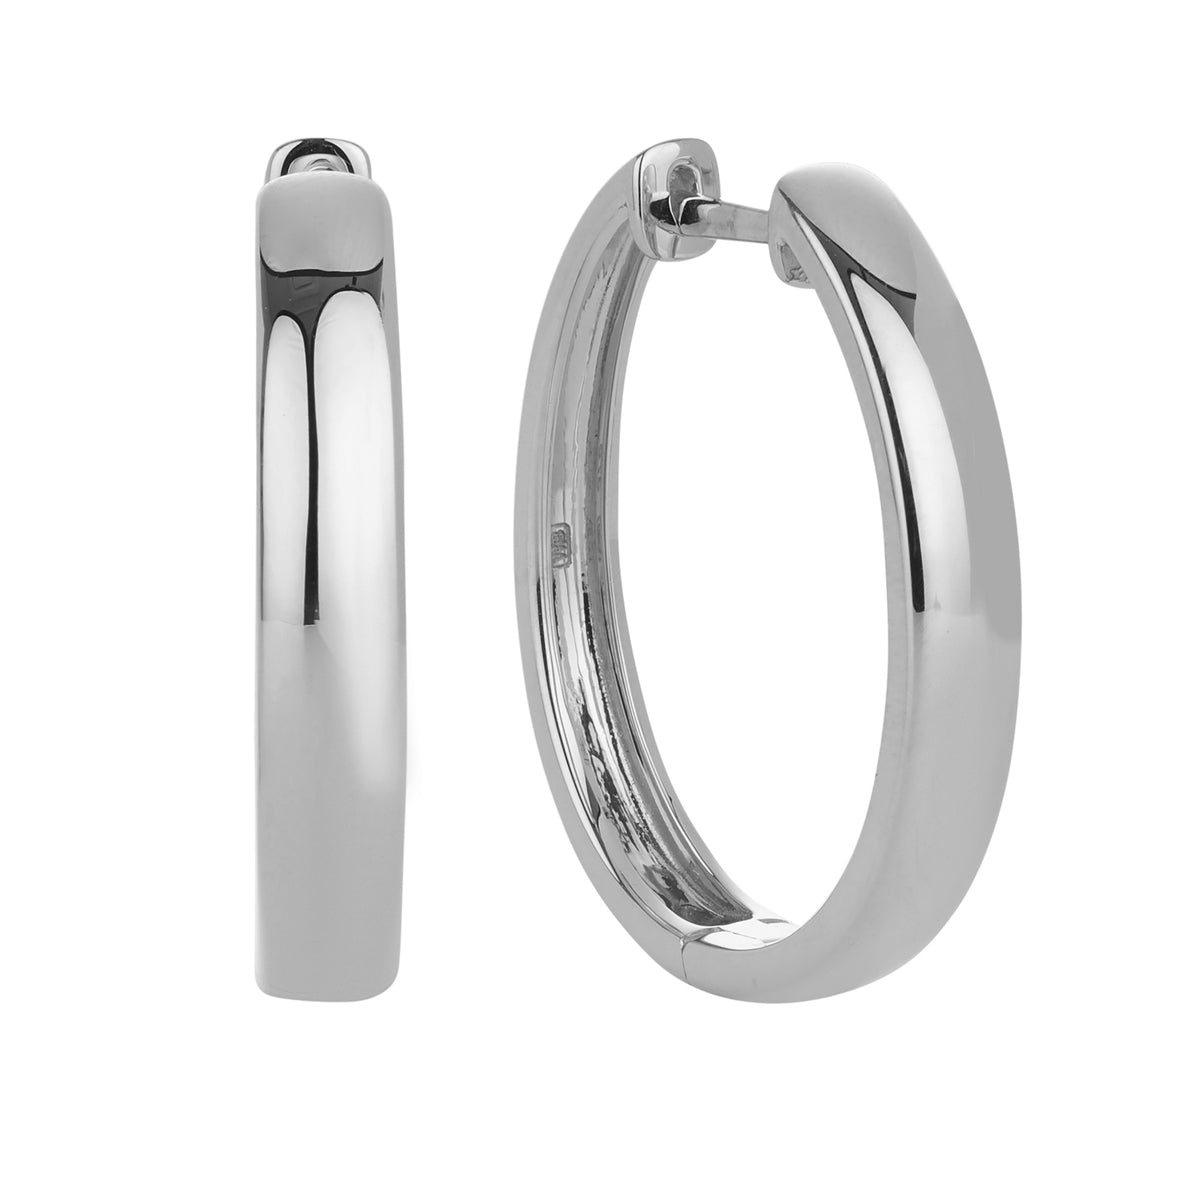 Oval Shaped Huggie Earrings in Sterling Silver